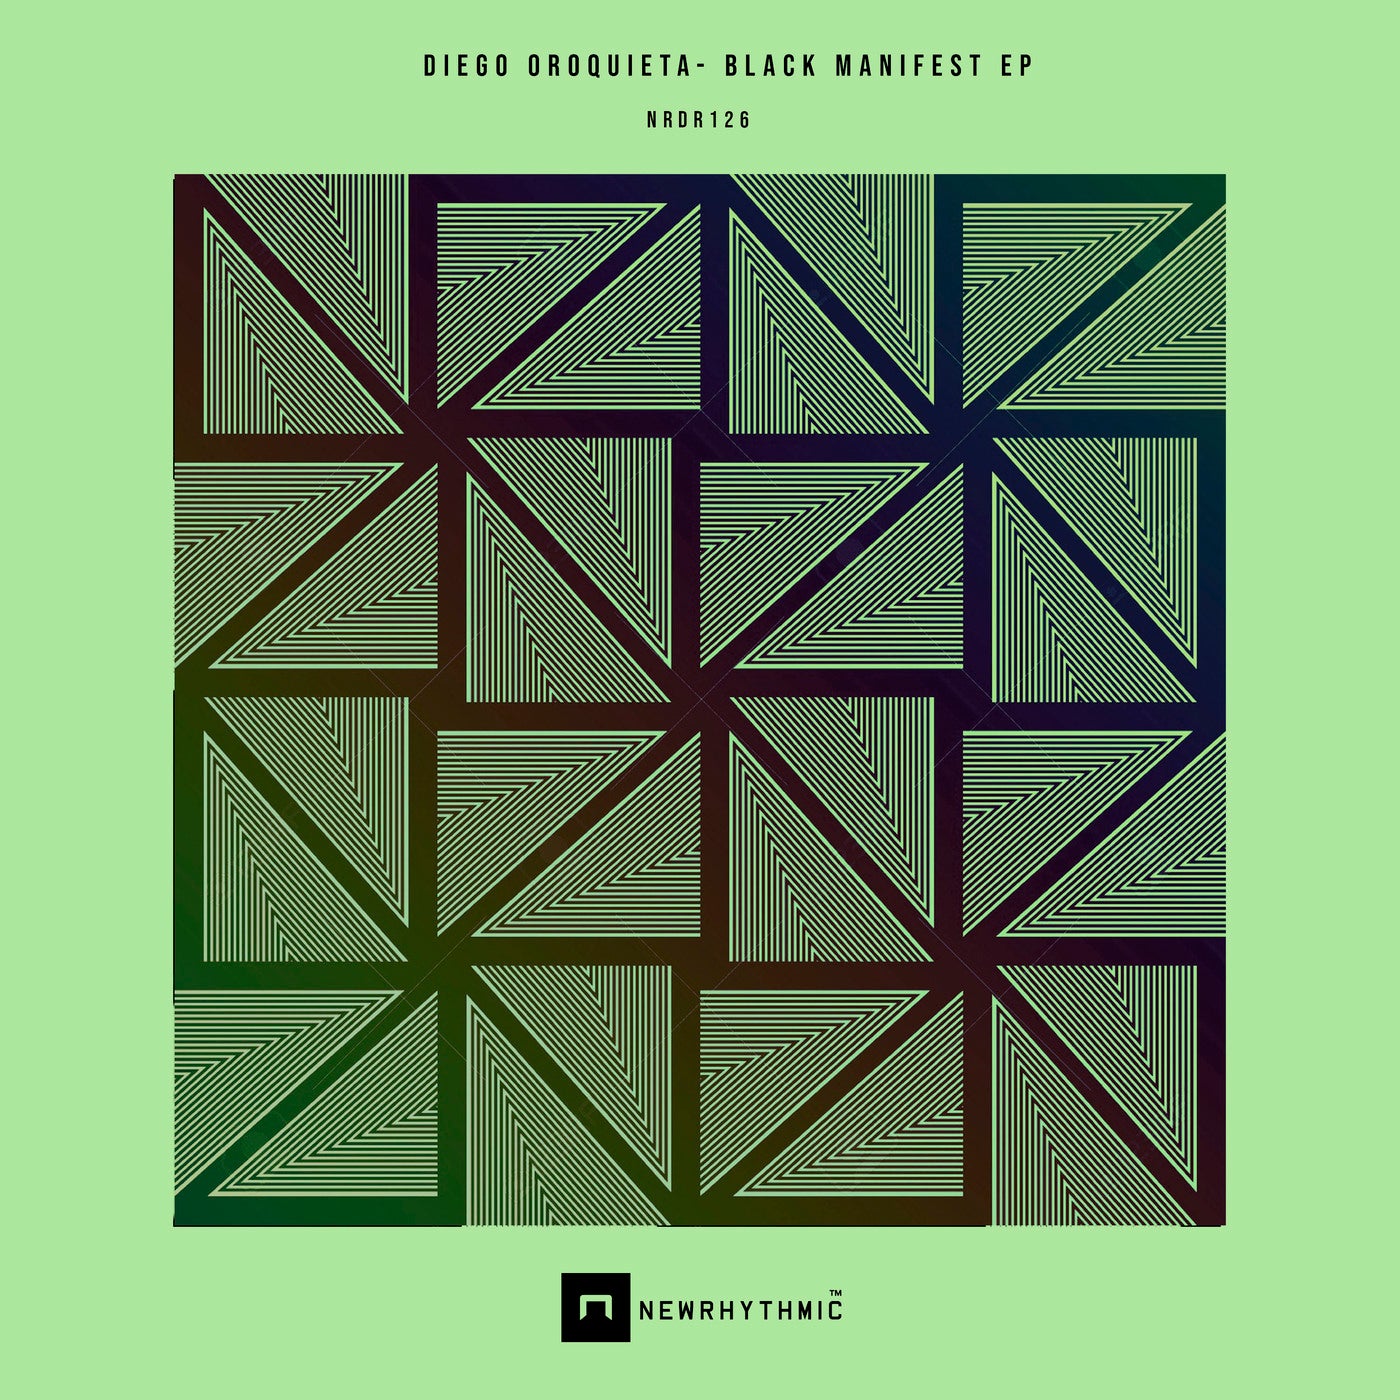 Diego Oroquieta – Black Manifest EP [NRDR126]